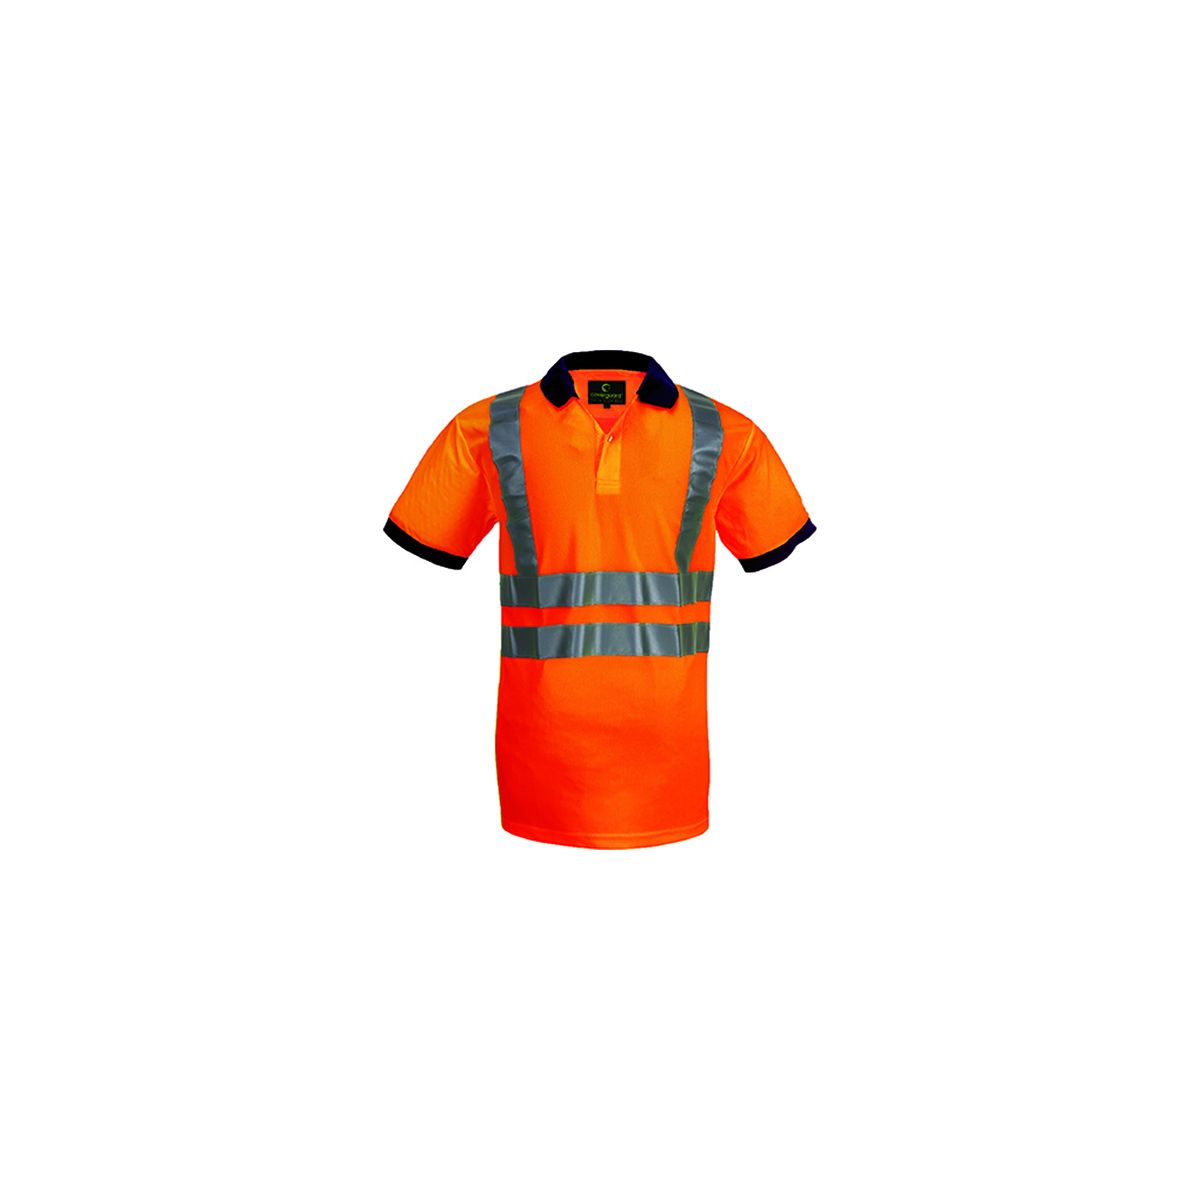 Polo haute visibilité manches courtes Yard orange - Coverguard - Taille L 0